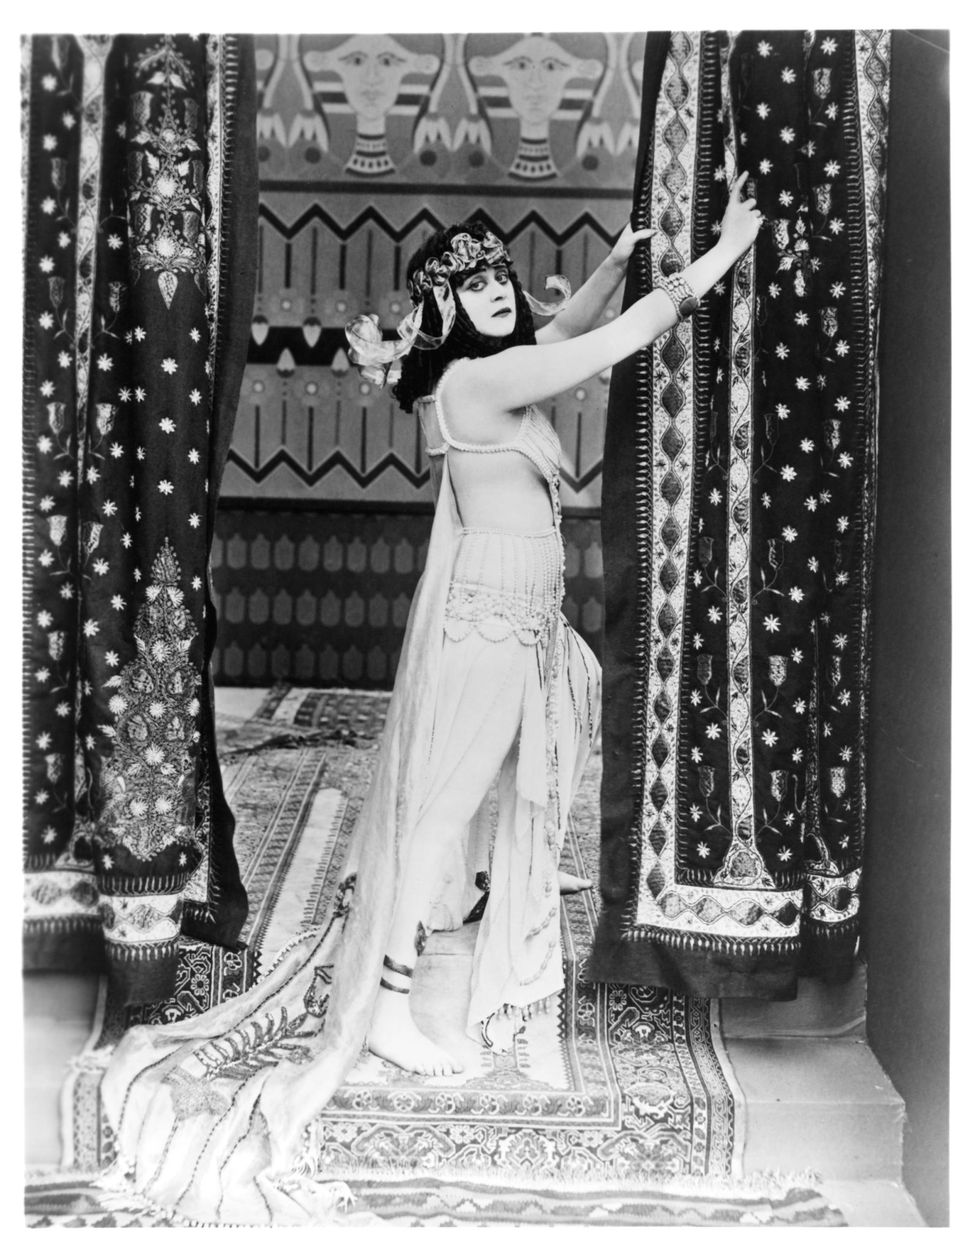 <p>De actrice Theda Bara werd één van Hollywoods eerste sekssymbolen en femme fatales toen ze in 1917 de rol van Cleopatra vertolkte in de gelijknamige film. De actrice droeg kostbare kostuums, gemaakt van slangenleer en edelstenen, die zorgvuldig rondom haar naakte lichaam gedrapeerd werden. Enkele scènes werden zelfs uit de film gecensureerd omdat er té veel bloot te zien zou zijn. Vele delen van de film zijn verloren gegaan, dus mocht je interesse gewekt zijn: helaas pindakaas.</p>